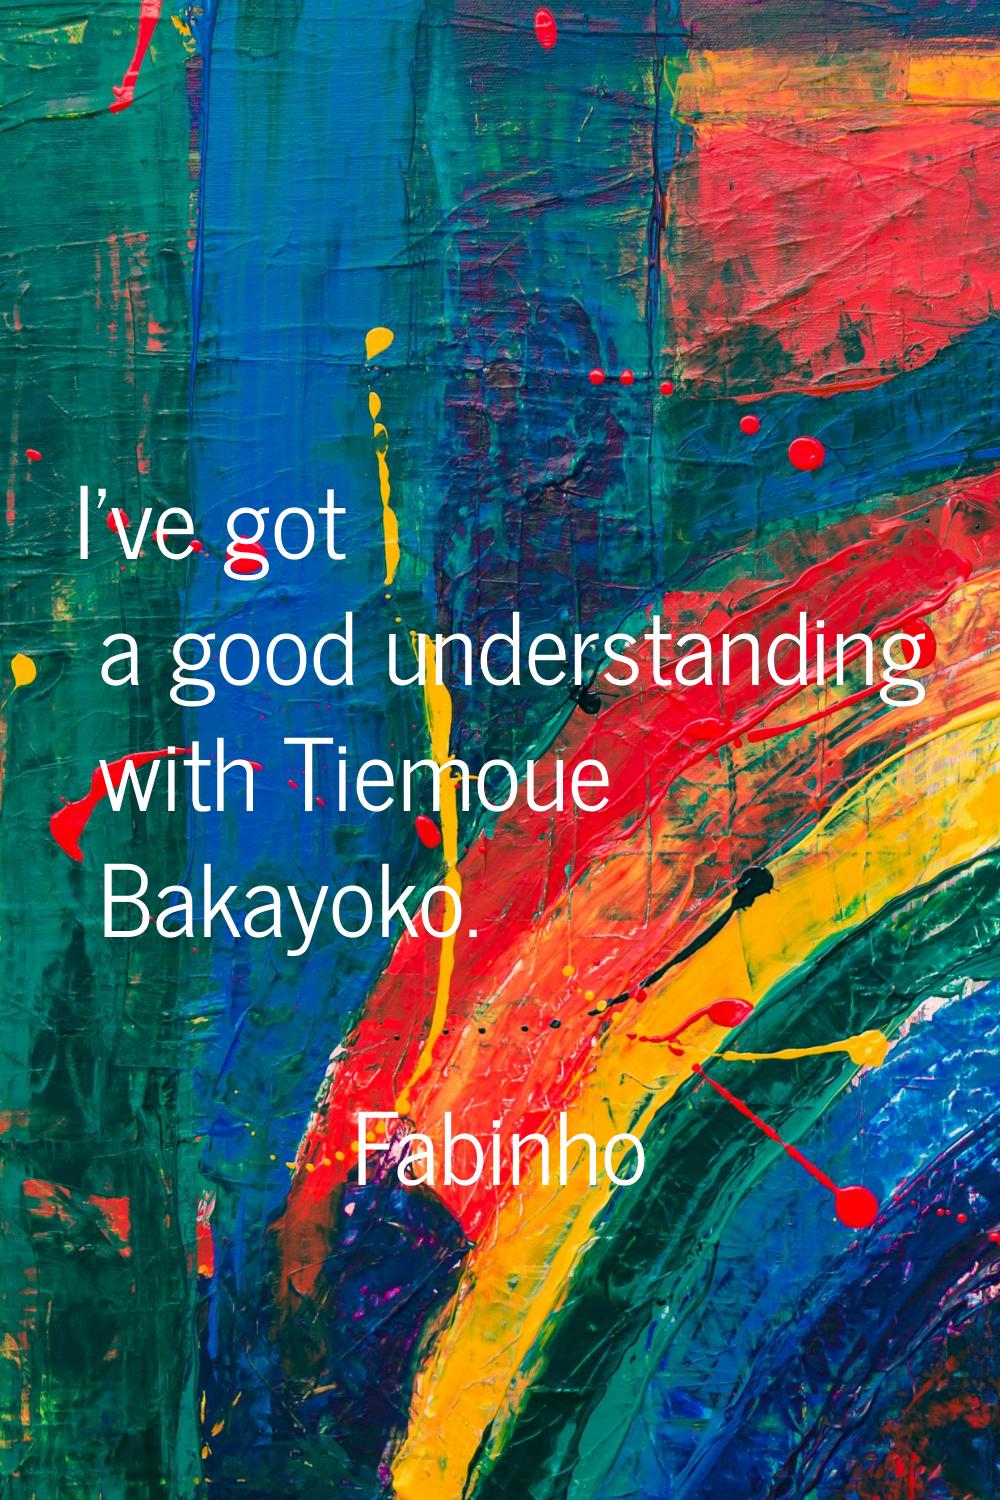 I've got a good understanding with Tiemoue Bakayoko.